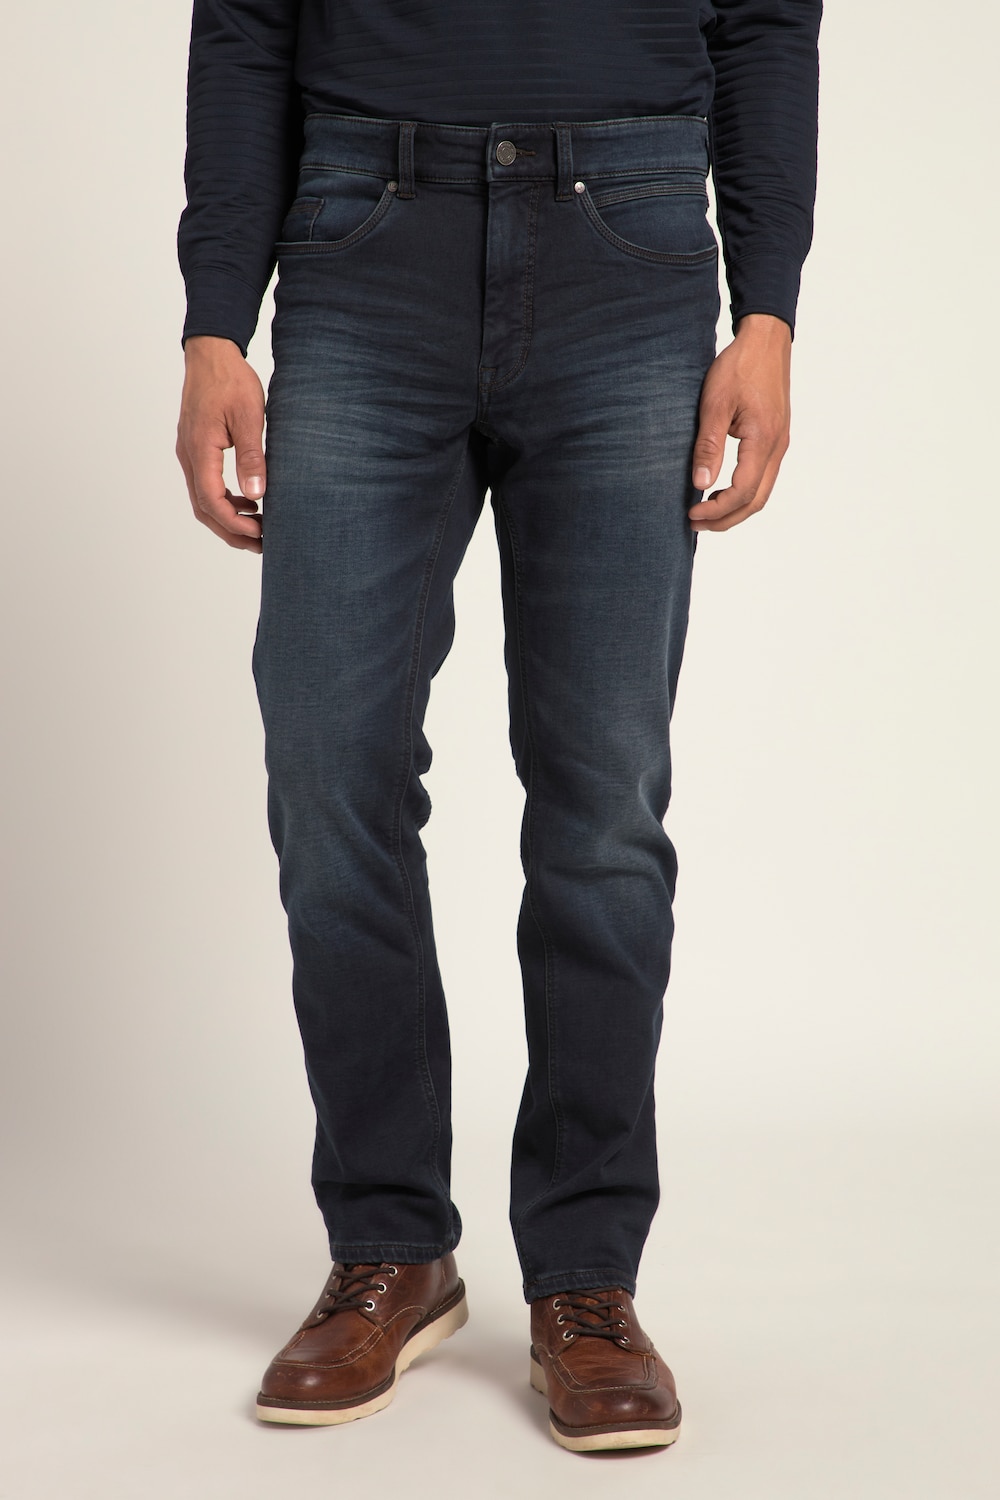 Grote Maten Jeans, Heren, blauw, Maat: 26, Katoen/Polyester, JP1880